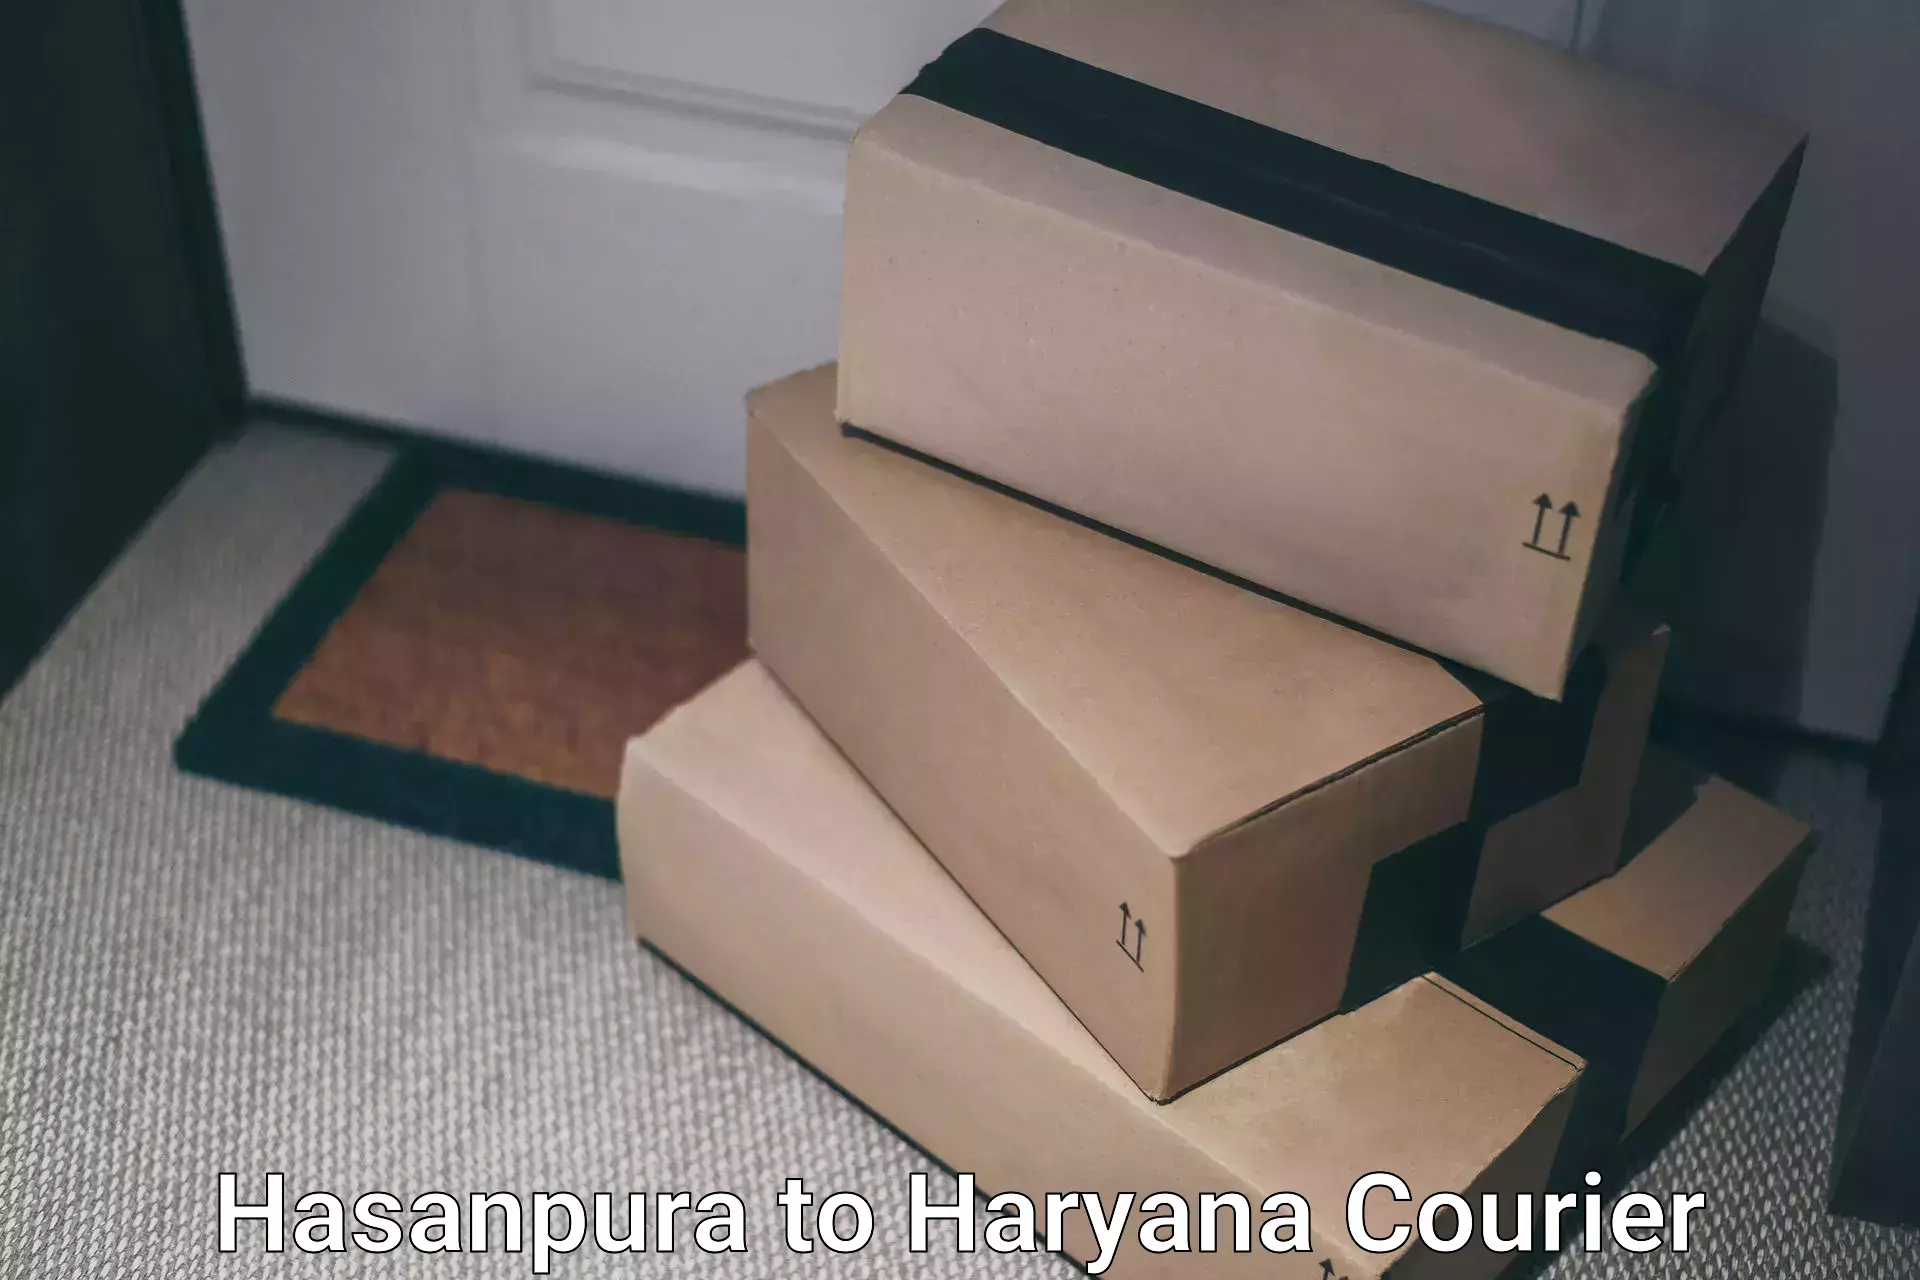 Doorstep delivery service Hasanpura to Karnal